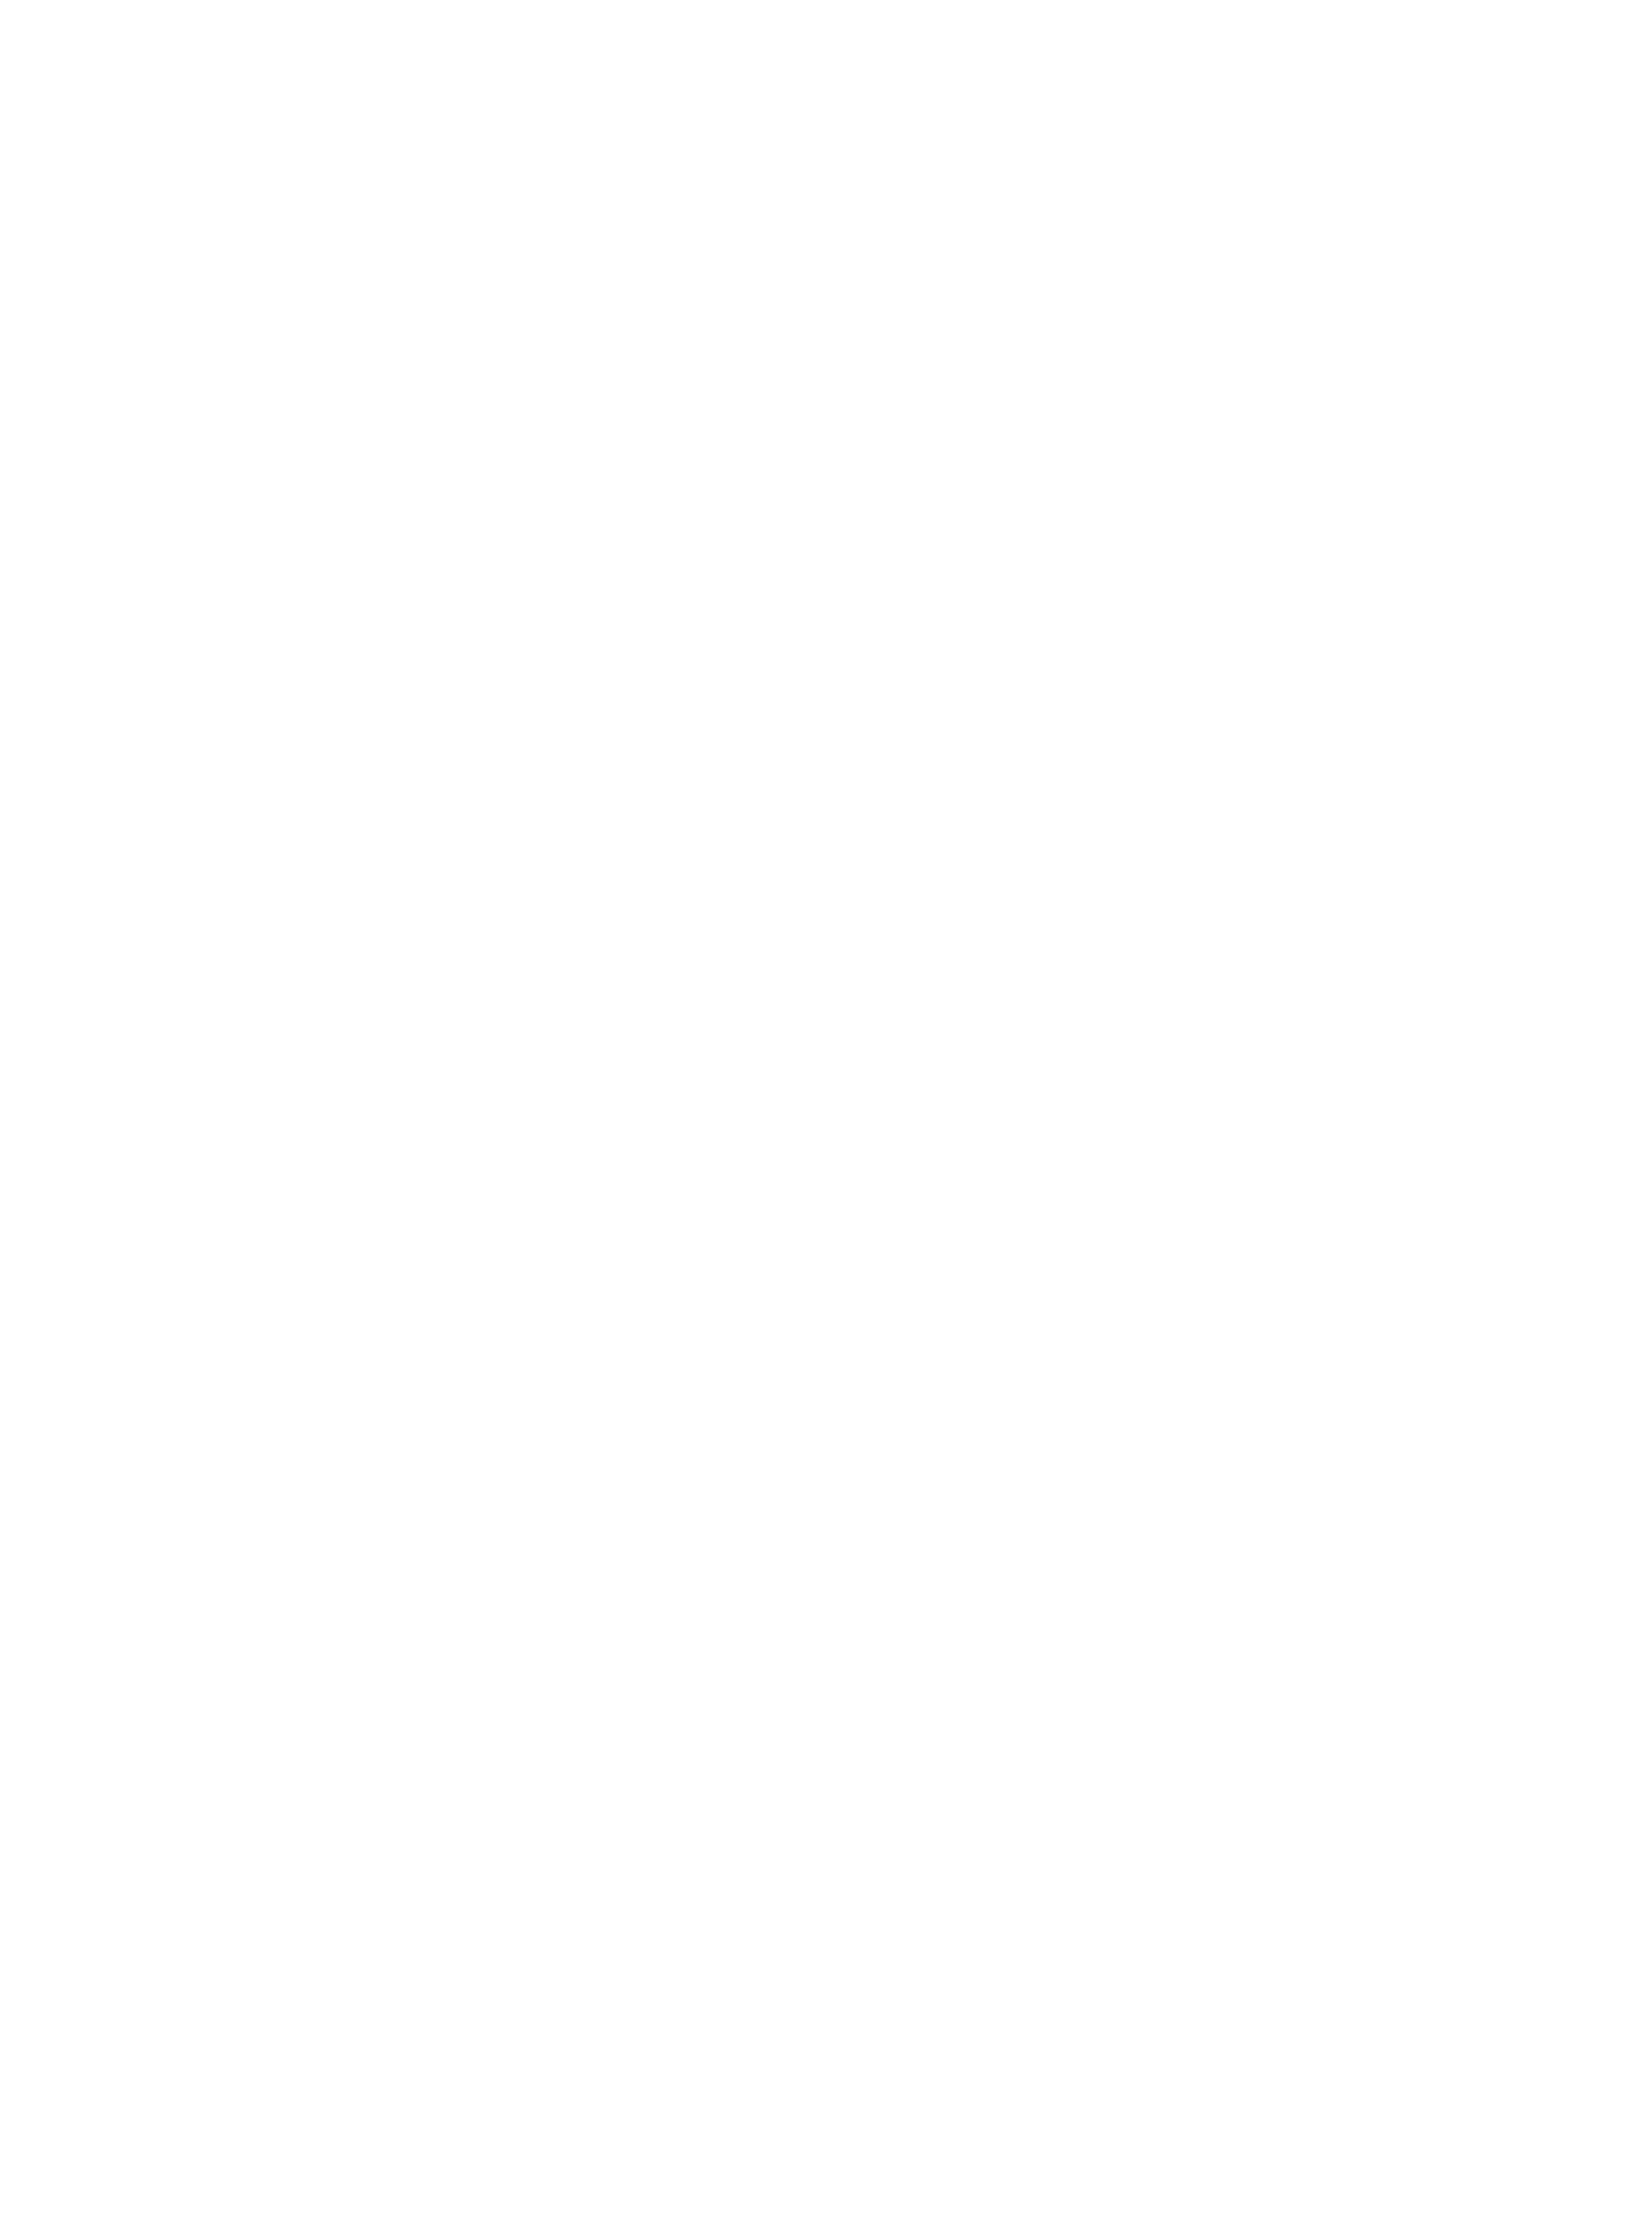 avatar-logo-02